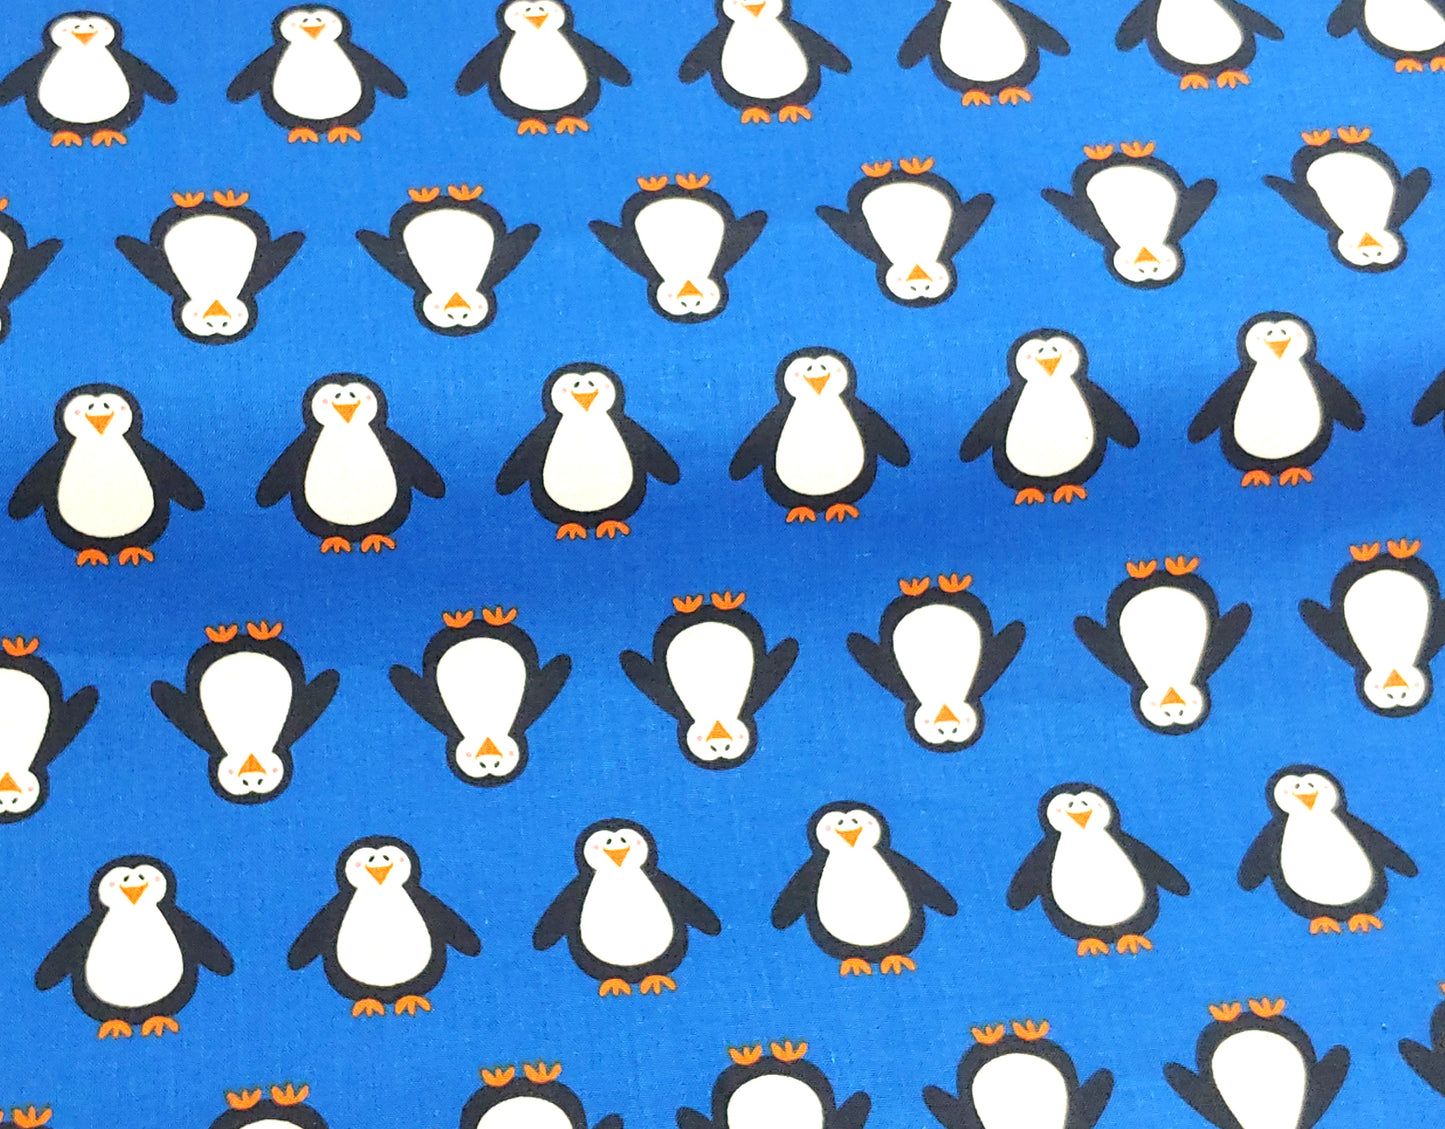 Penguins ♥ 3 PCS